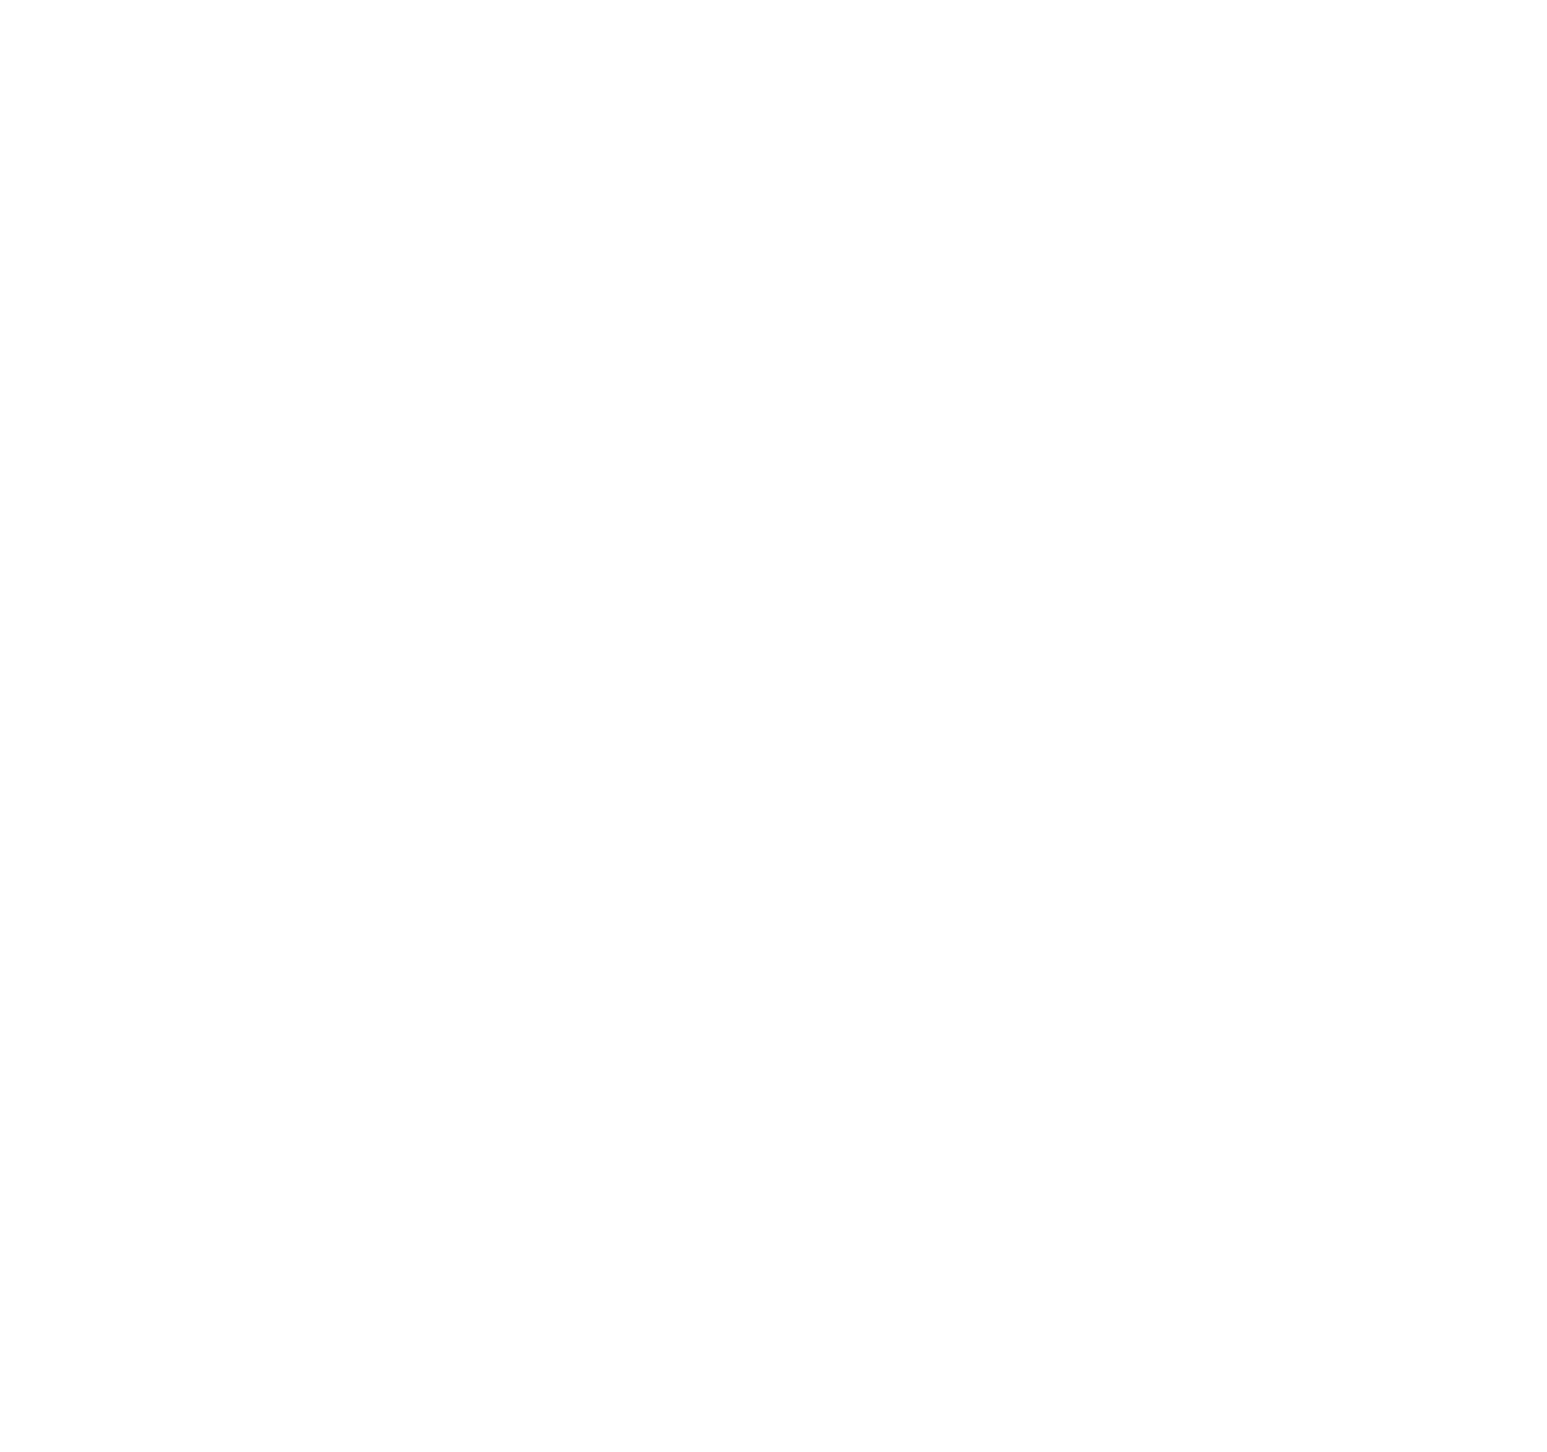 Hitachi logo pour fonds sombres (PNG transparent)